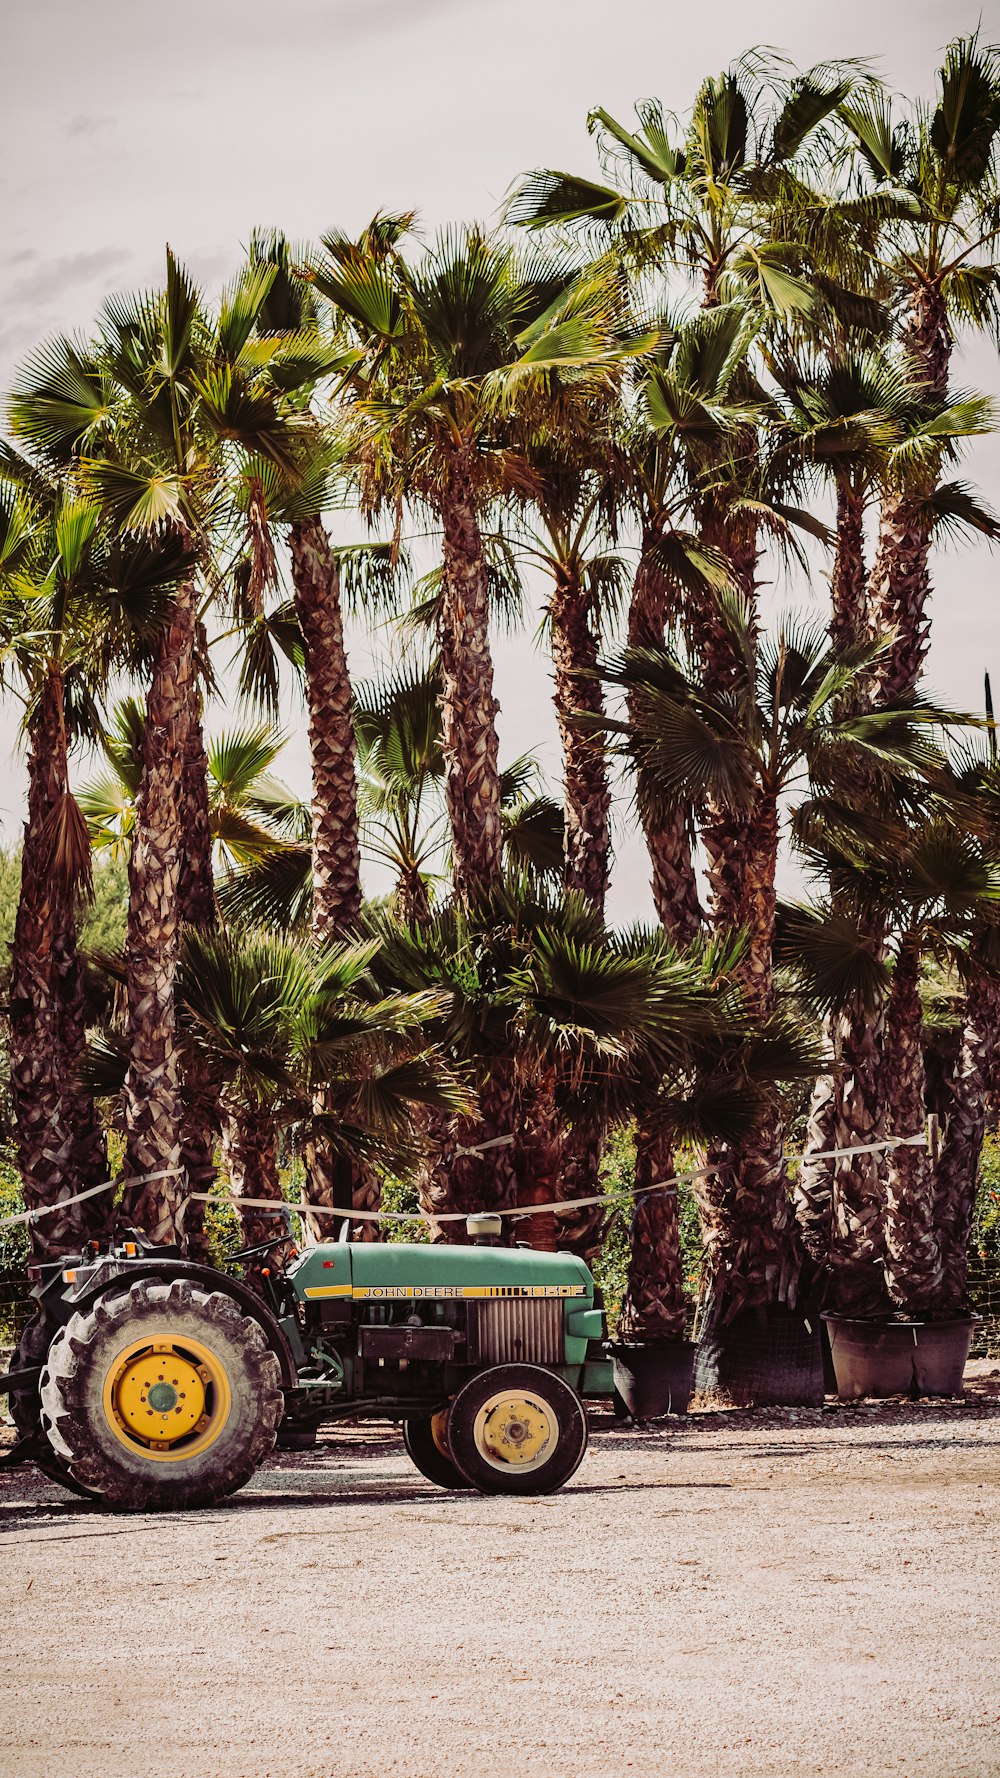 Grüner Traktor in der Nähe von Green Palm während des Tages